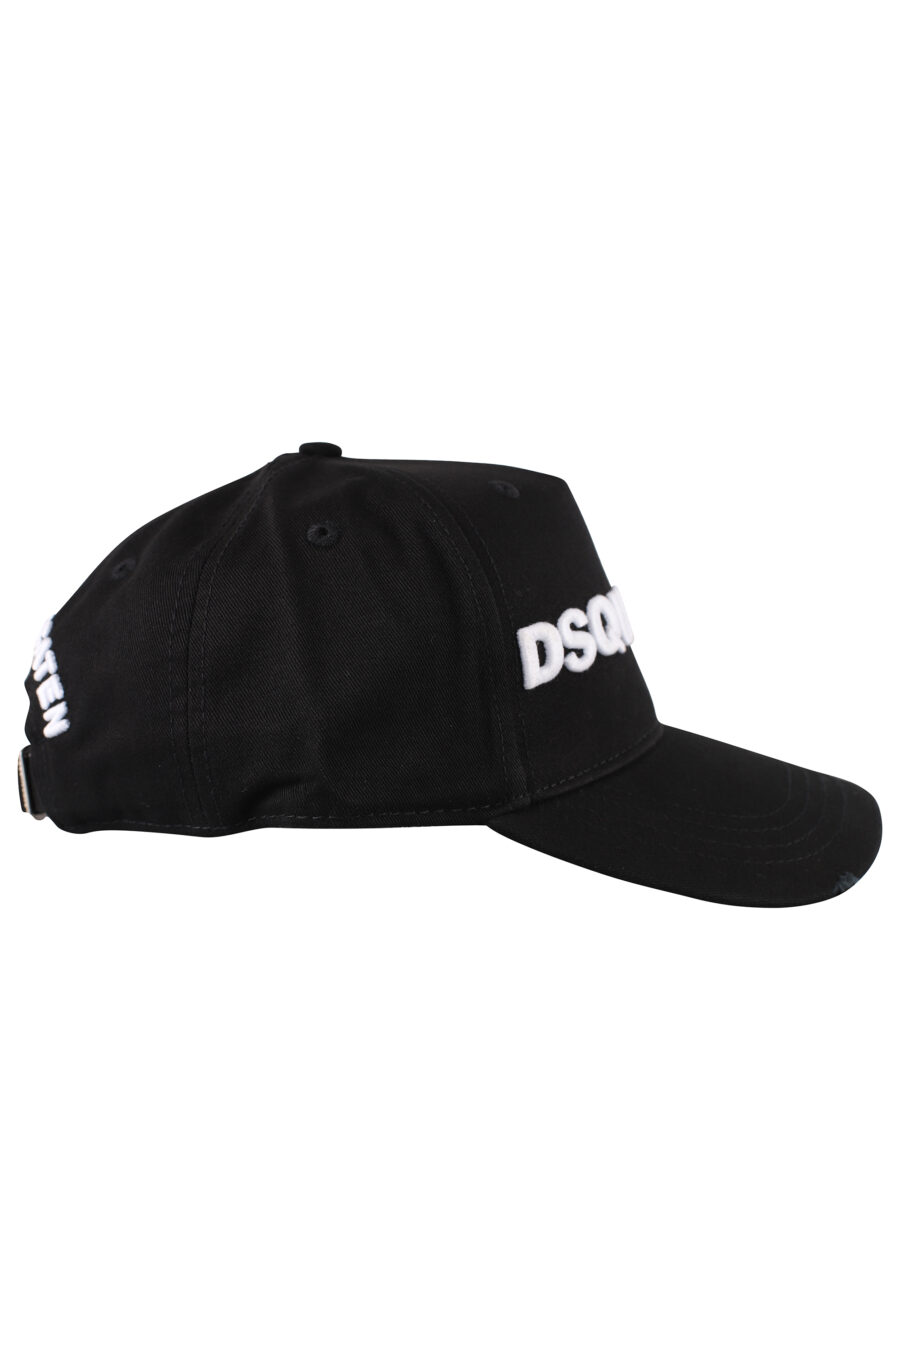 Gorra negra con logo blanco bordado - IMG 1239